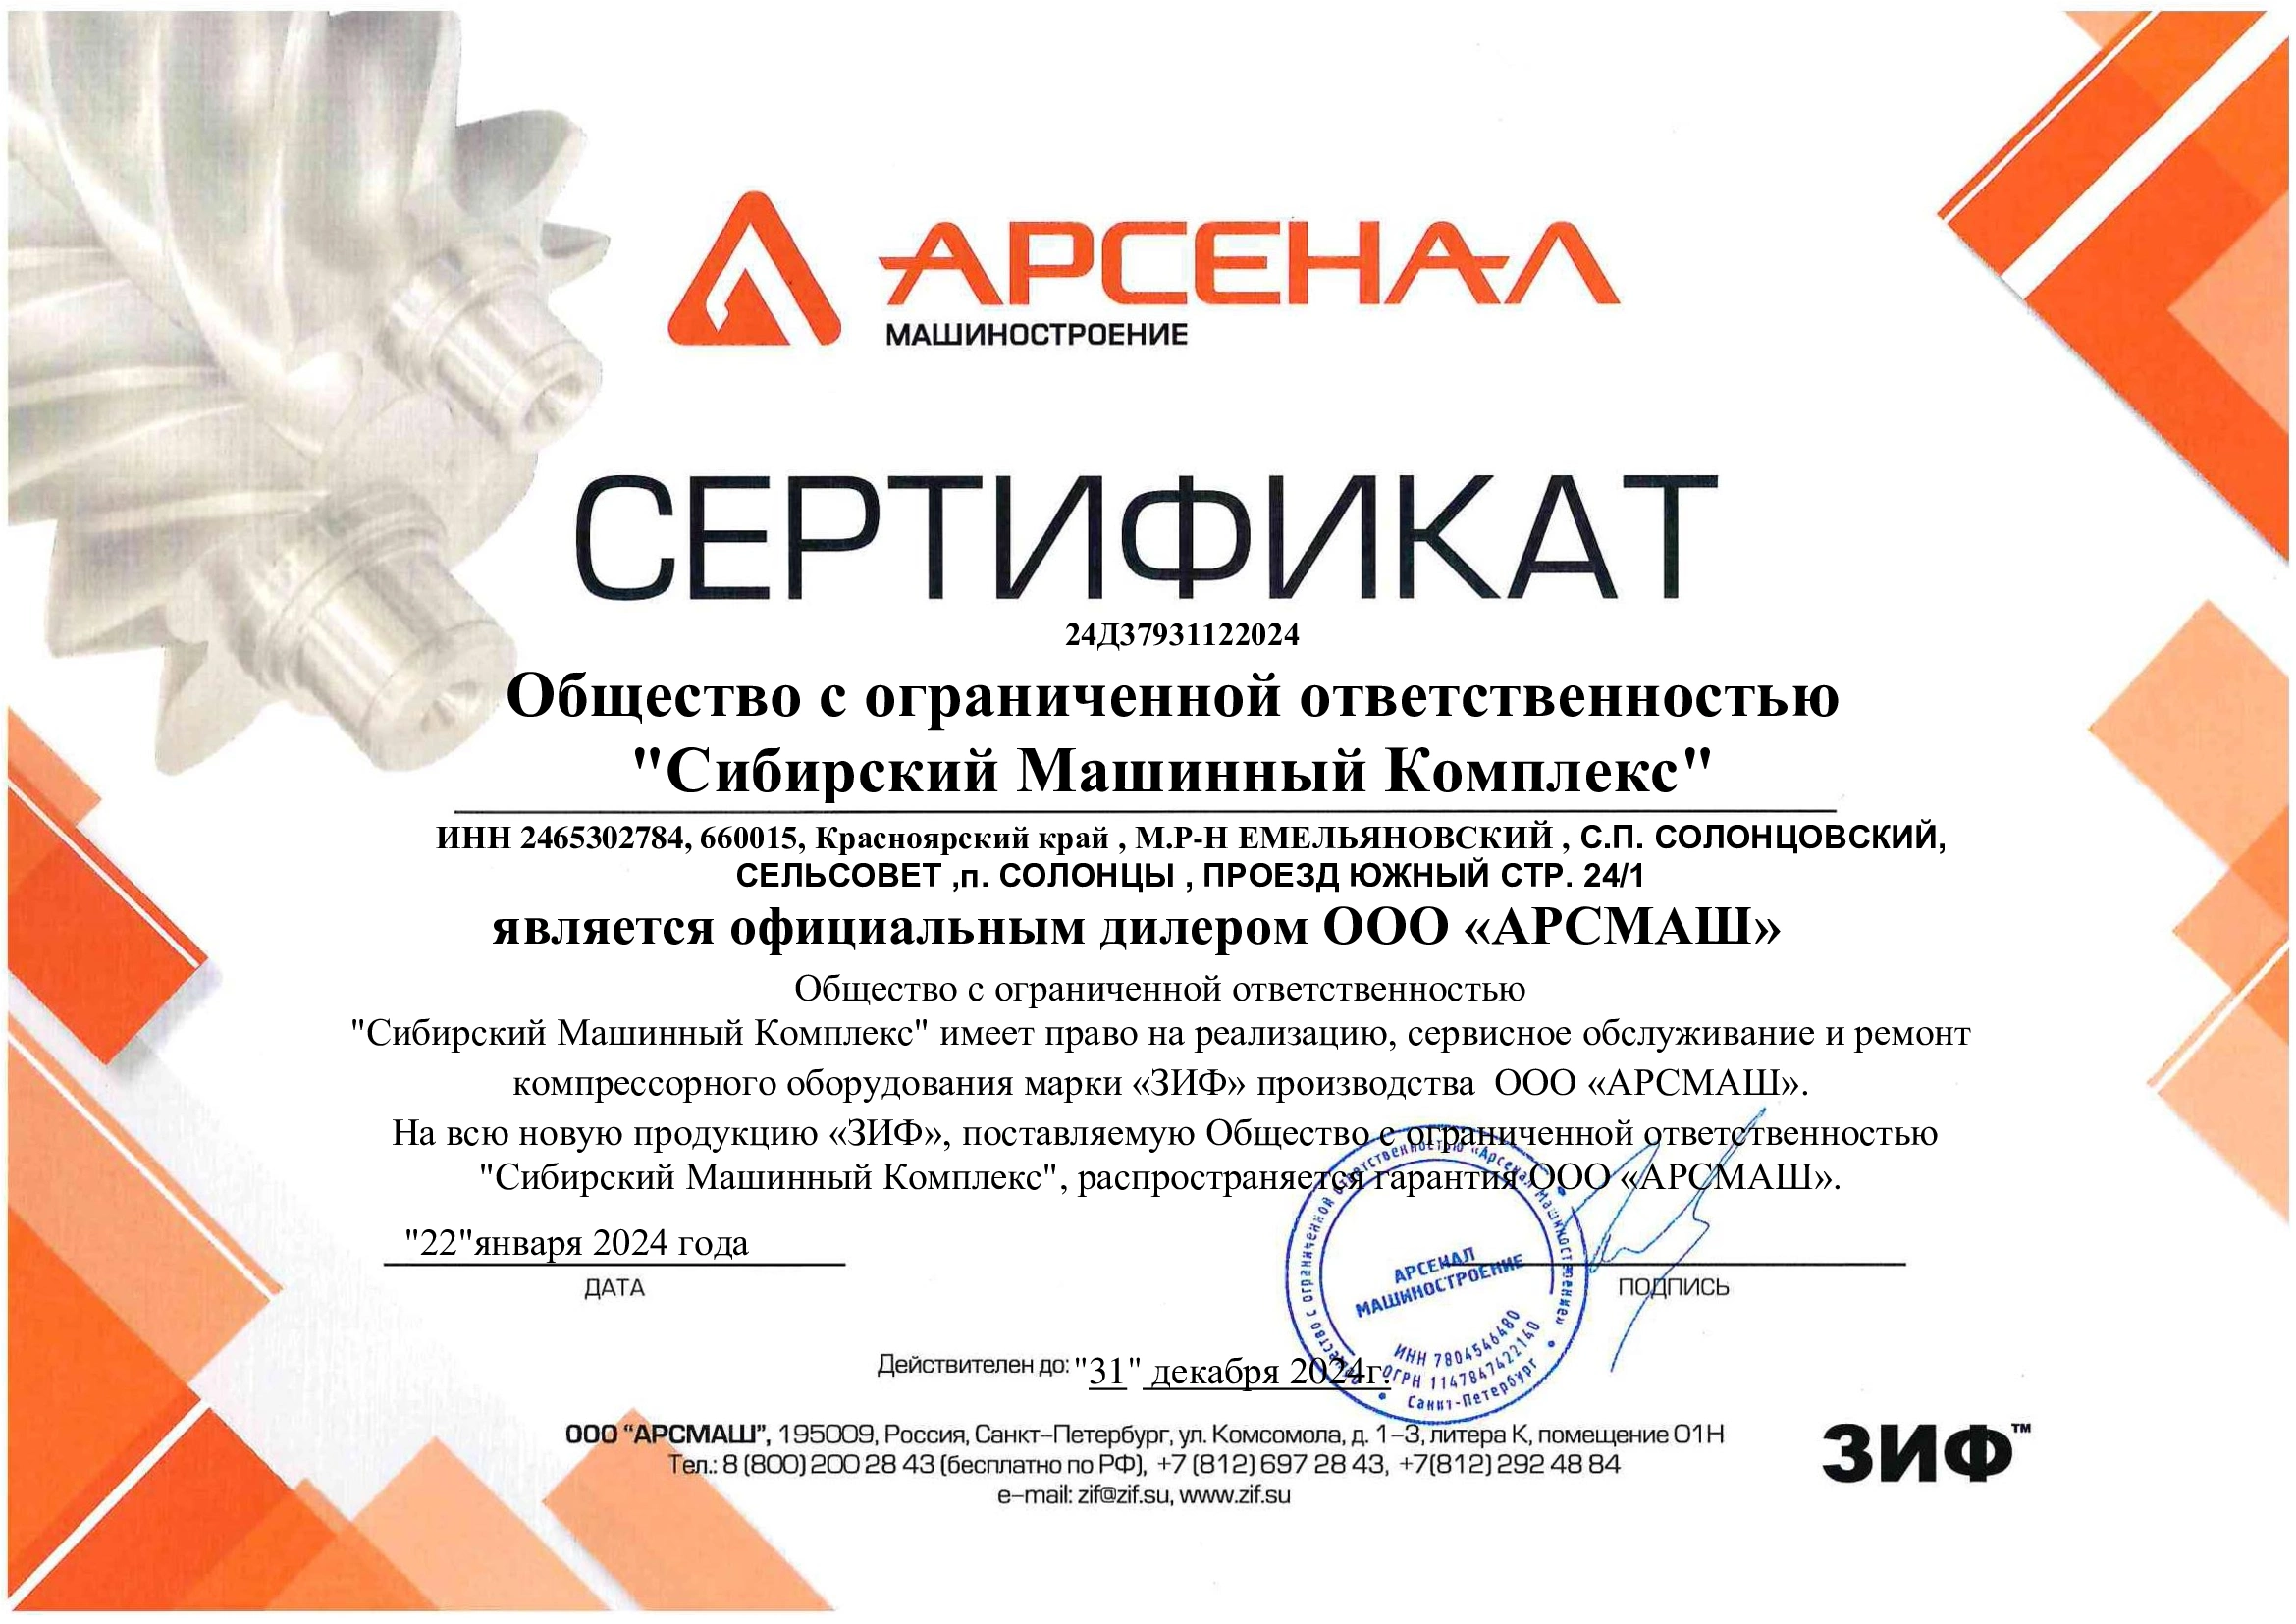 Сертификат дилерства ООО «АрсМаш» – СМК г. Иркутск